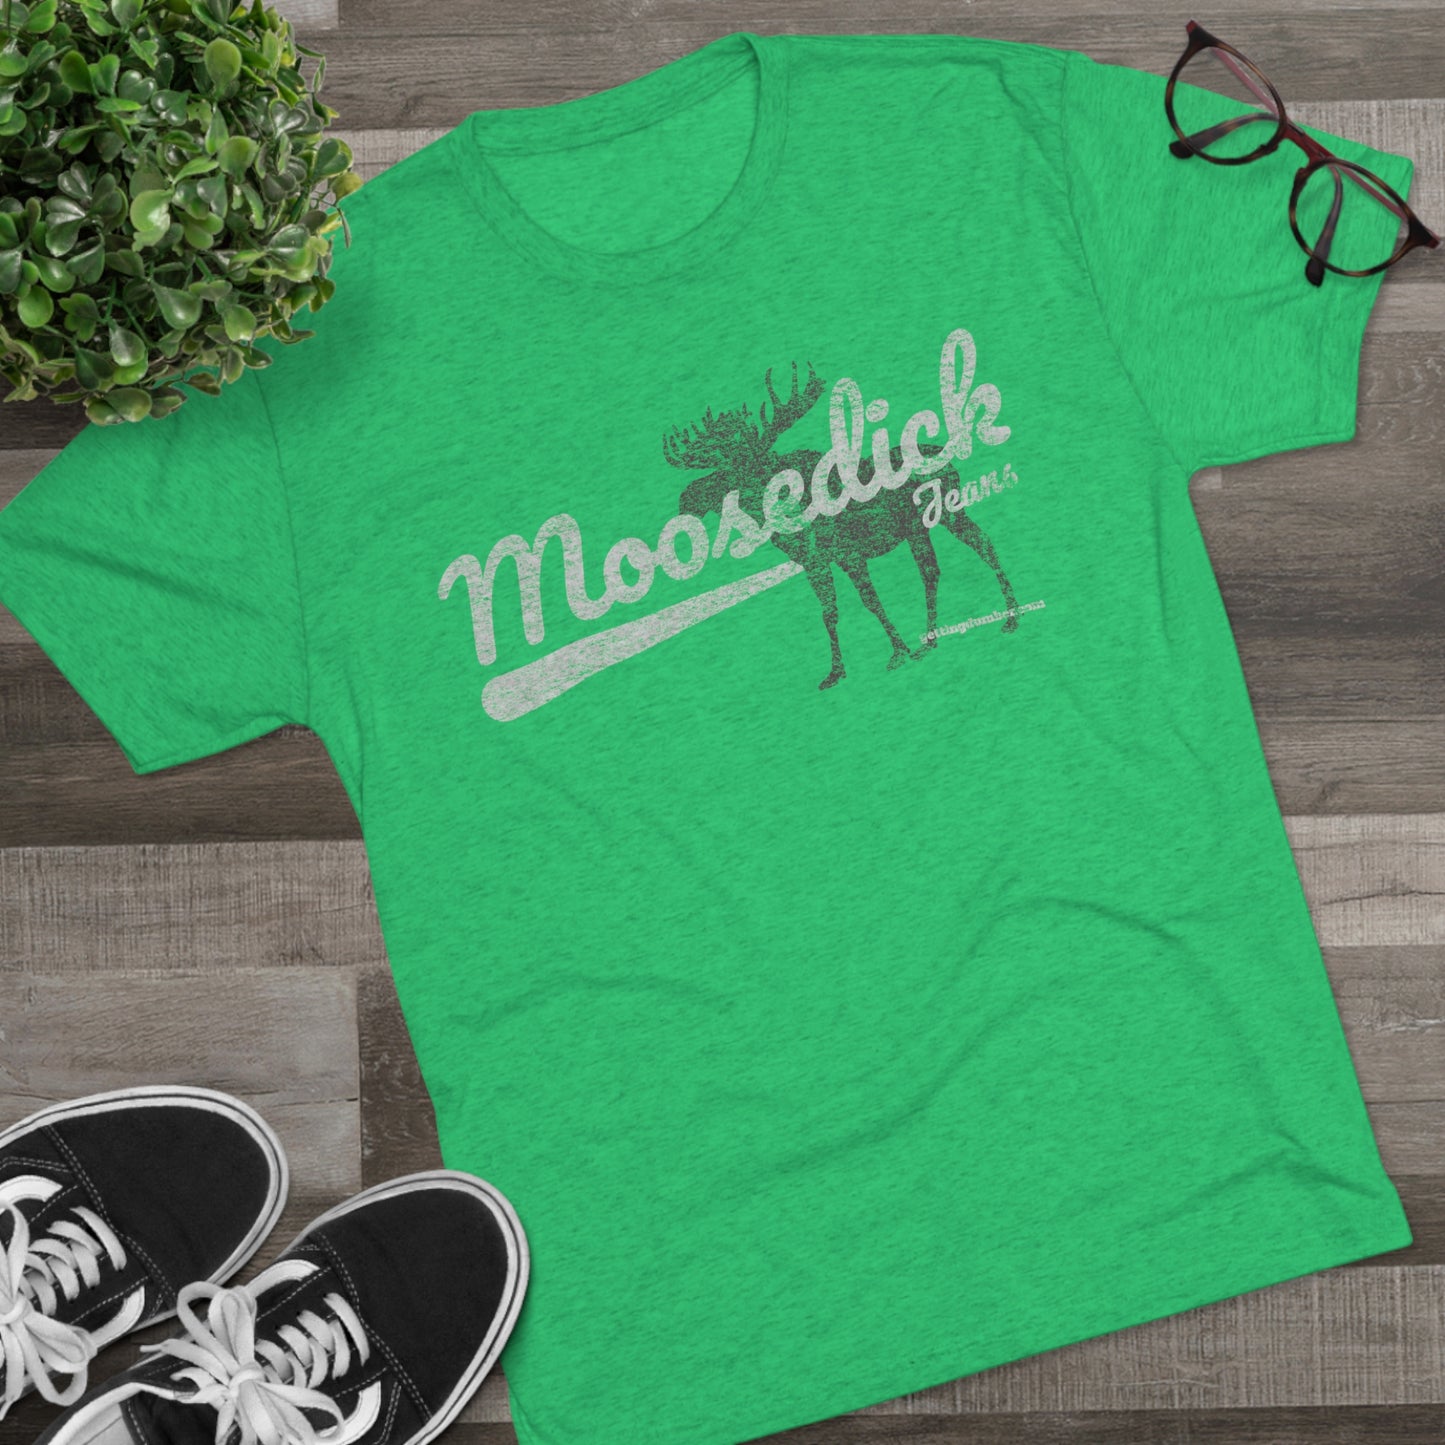 Moosedick Tri-Blend Crew T-shirt